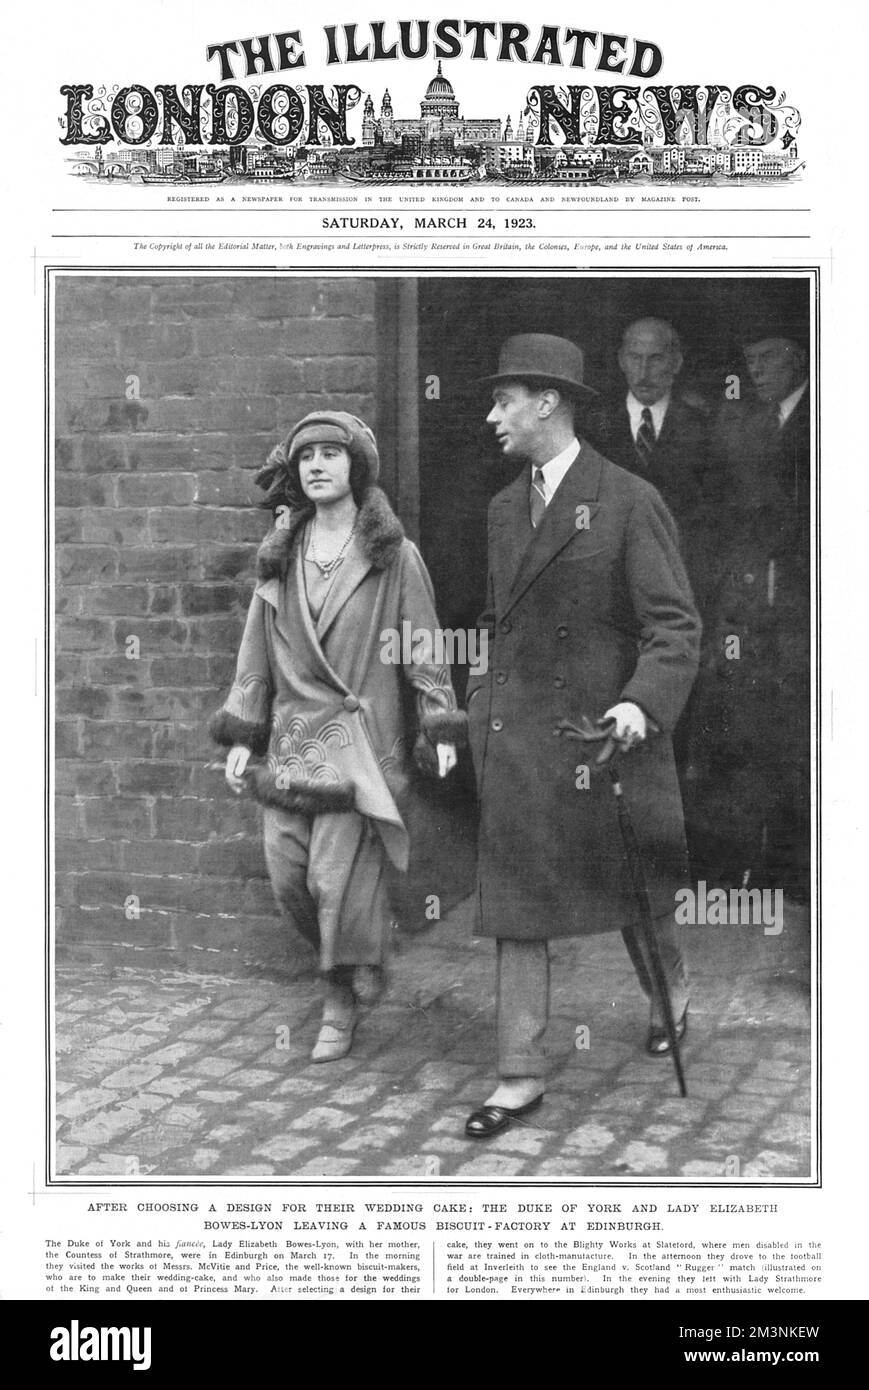 Prince Albert, duc de York, plus tard le roi George VI photographié avec sa fiancée Lady Elizabeth Bowes-Lyon en visite à l'usine de fabricants de biscuits McVitie et Price à Édimbourg, où ils avaient choisi un design pour leur gâteau de mariage. Banque D'Images